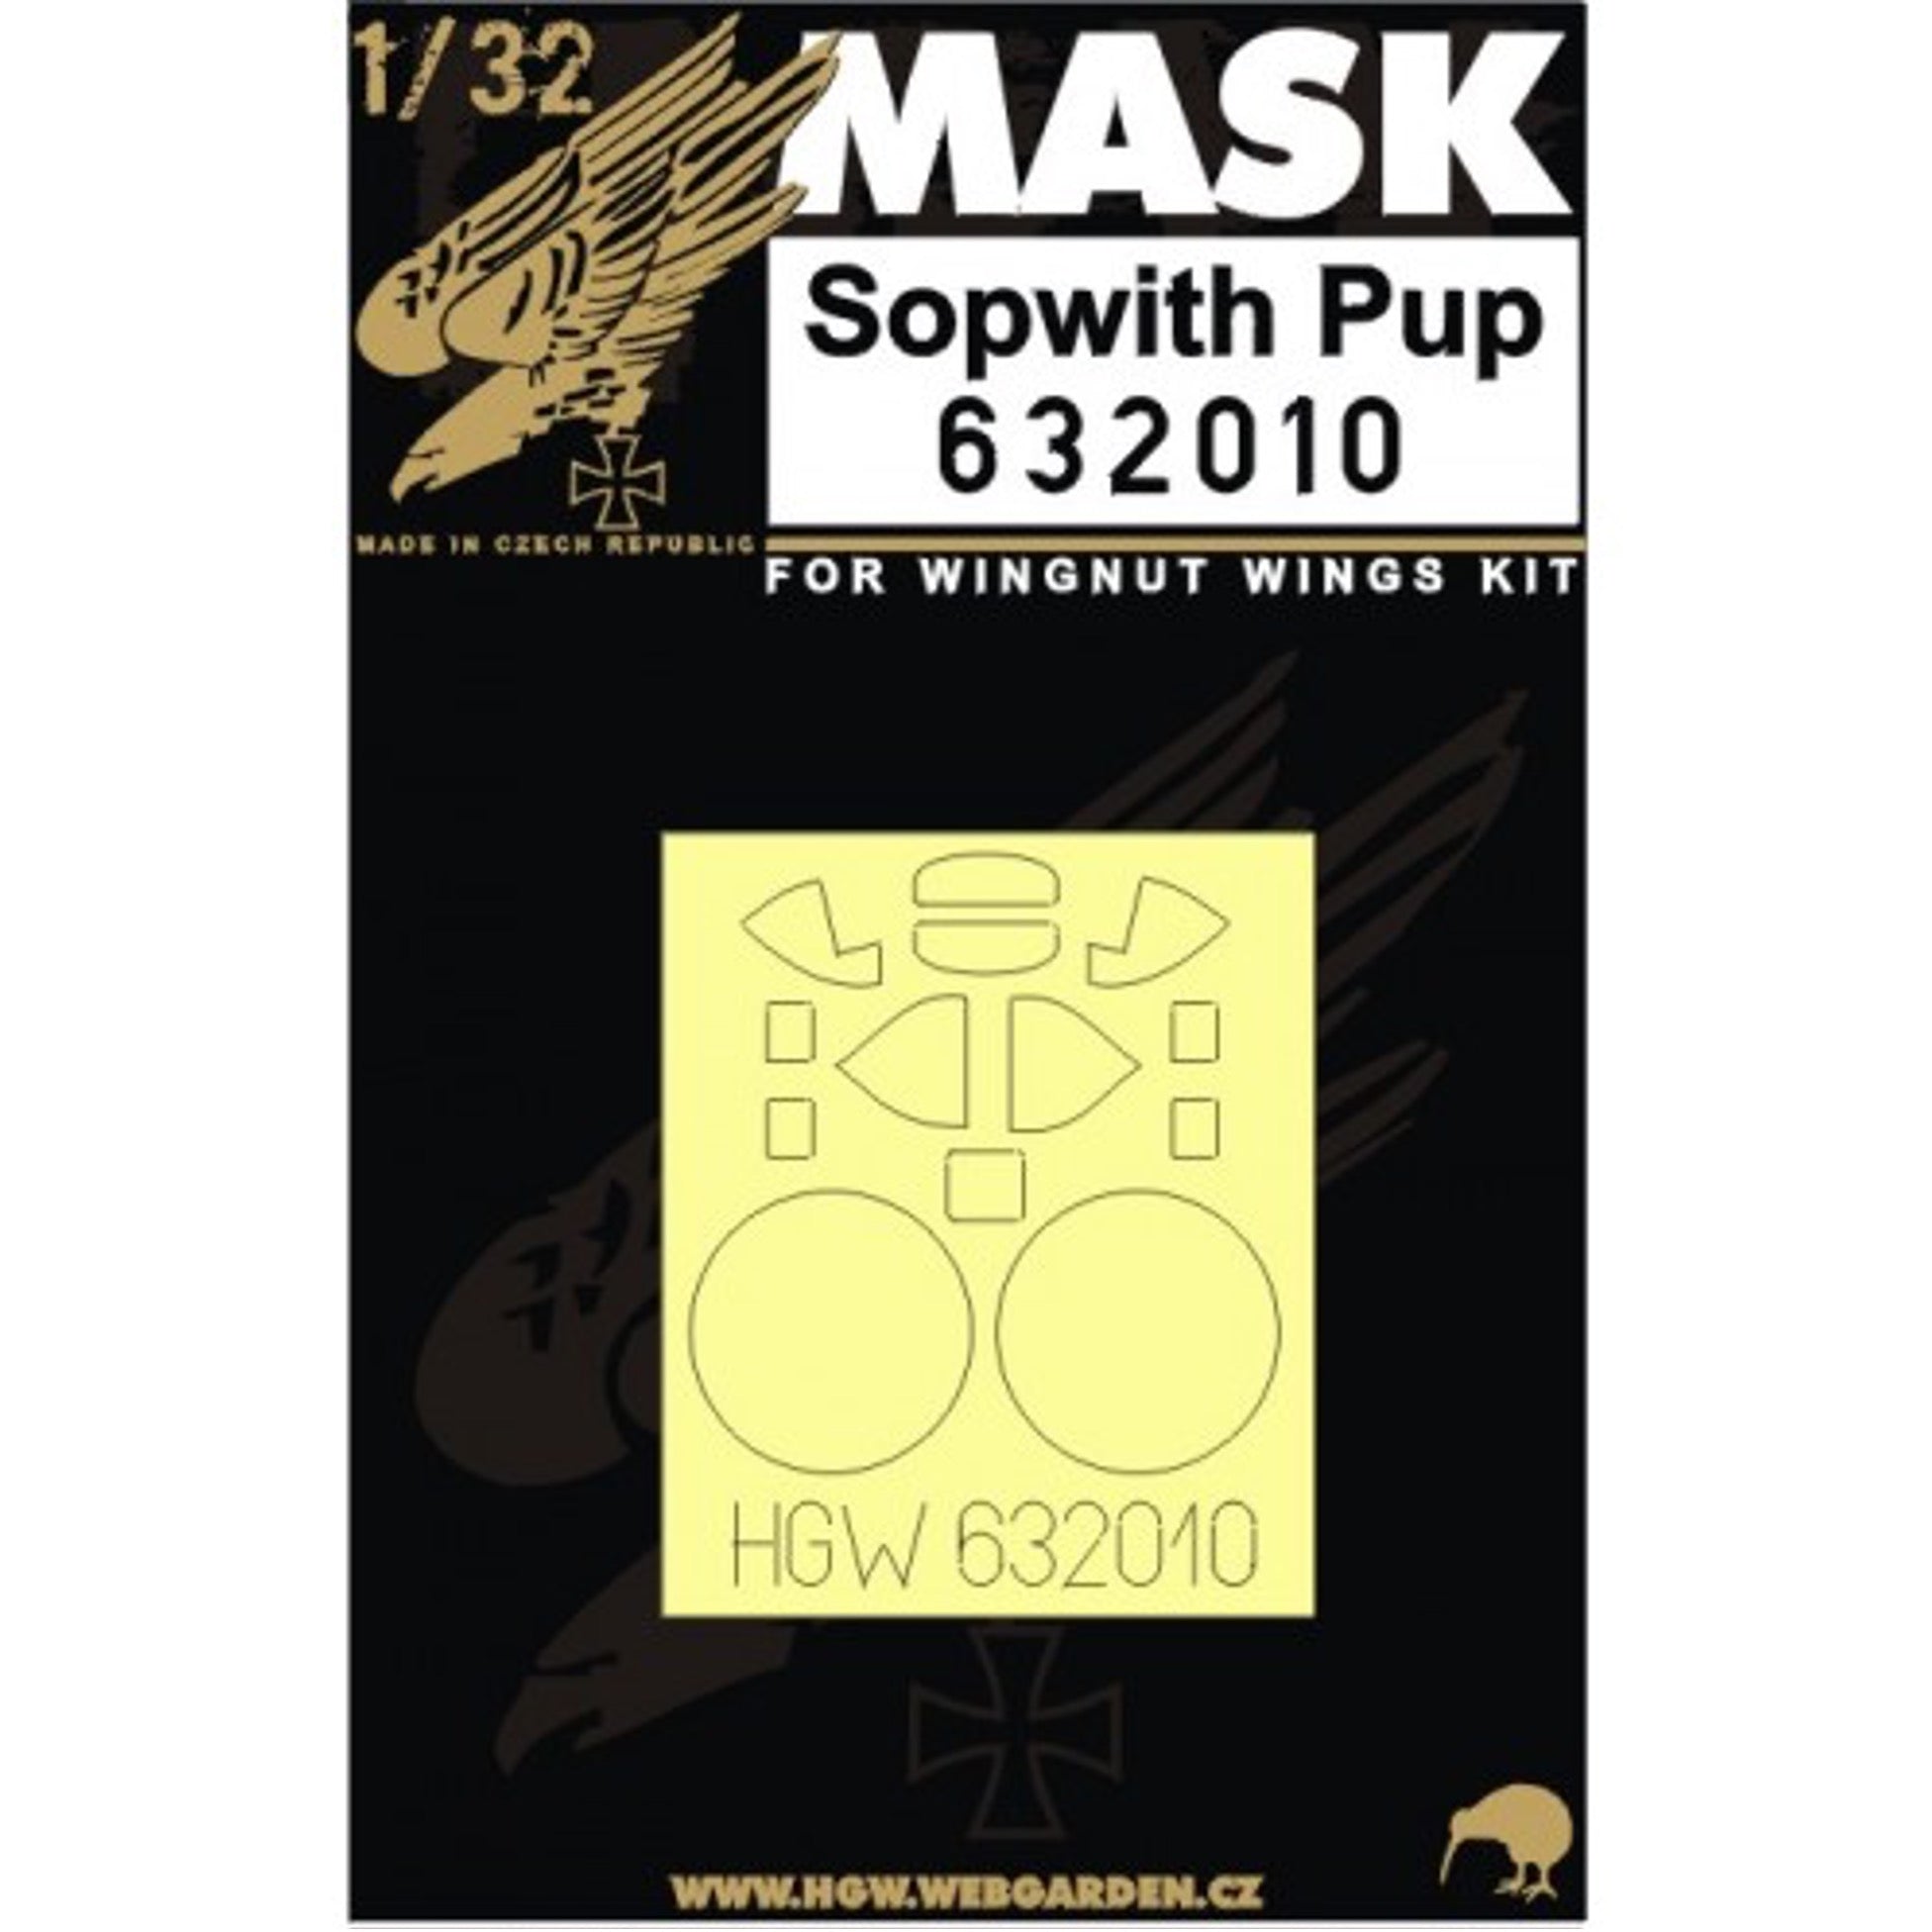 1/32 - Masks - Sopwith Pup